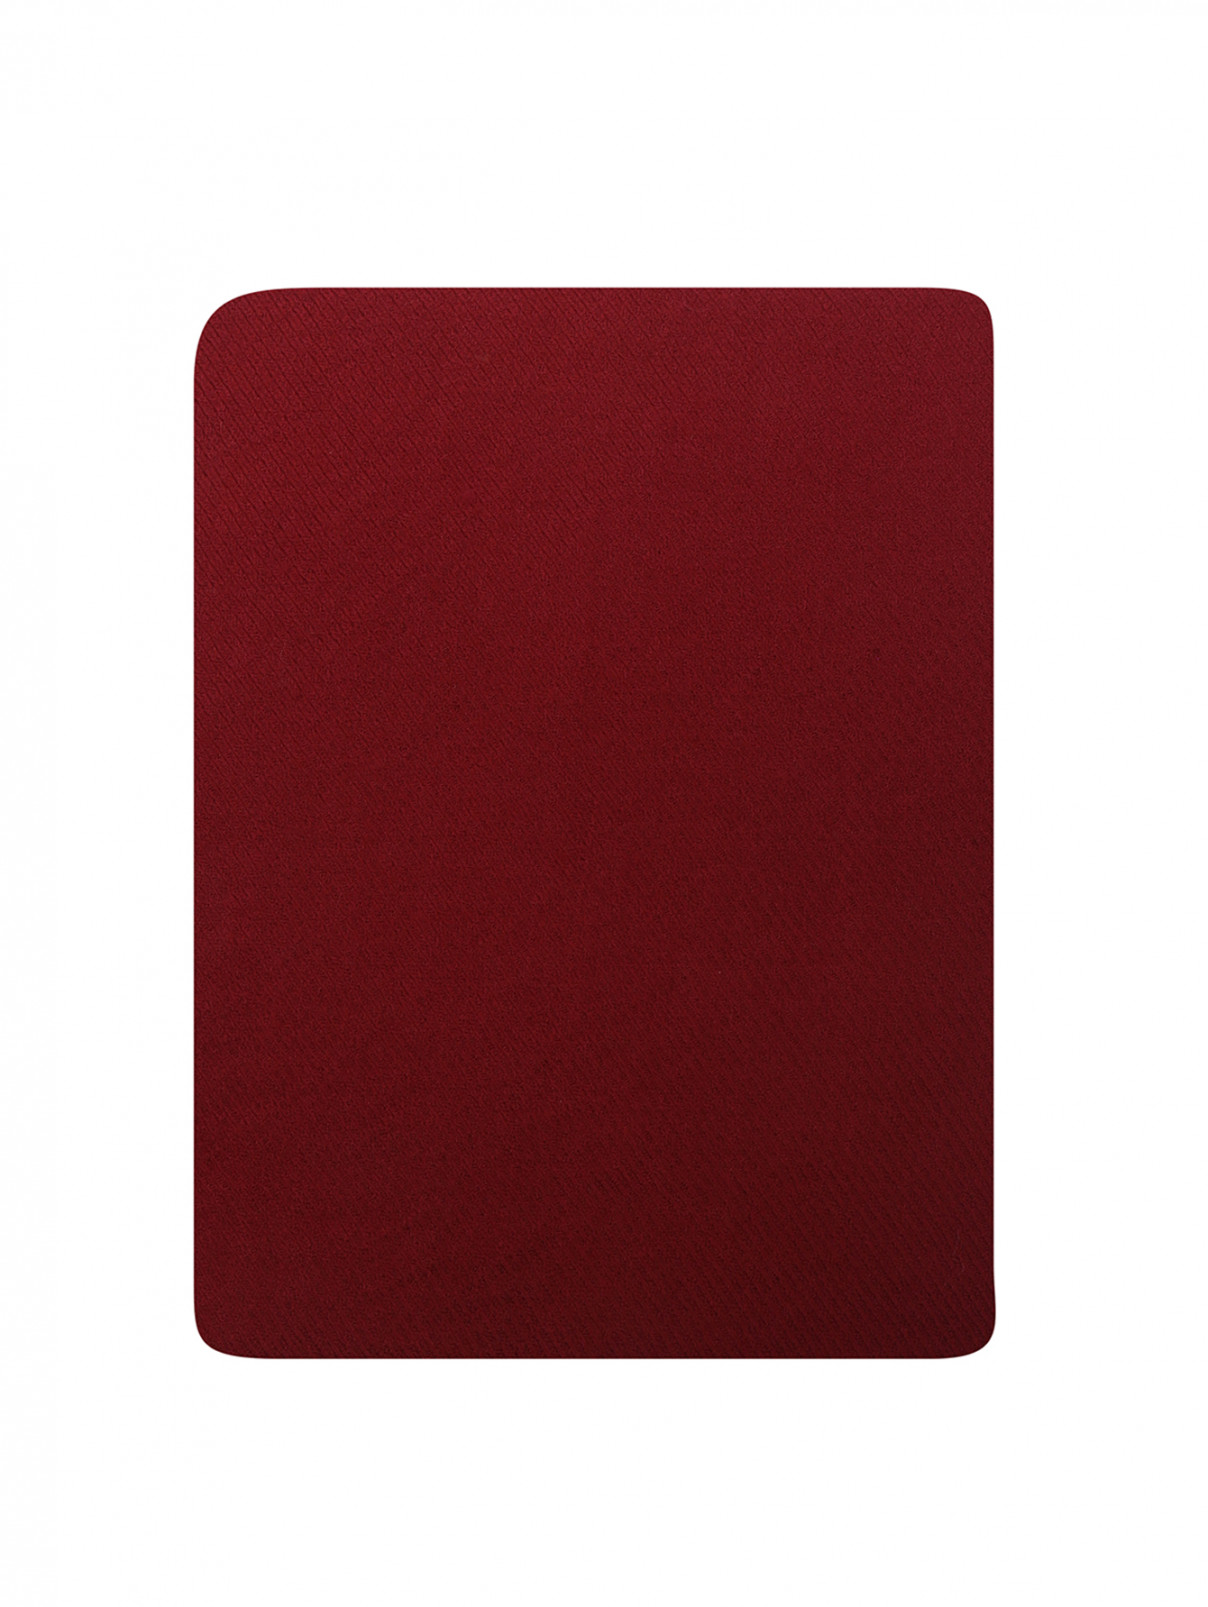 Шарф из шерсти и кашемира с бахромой Faliero Sarti  –  Общий вид  – Цвет:  Красный